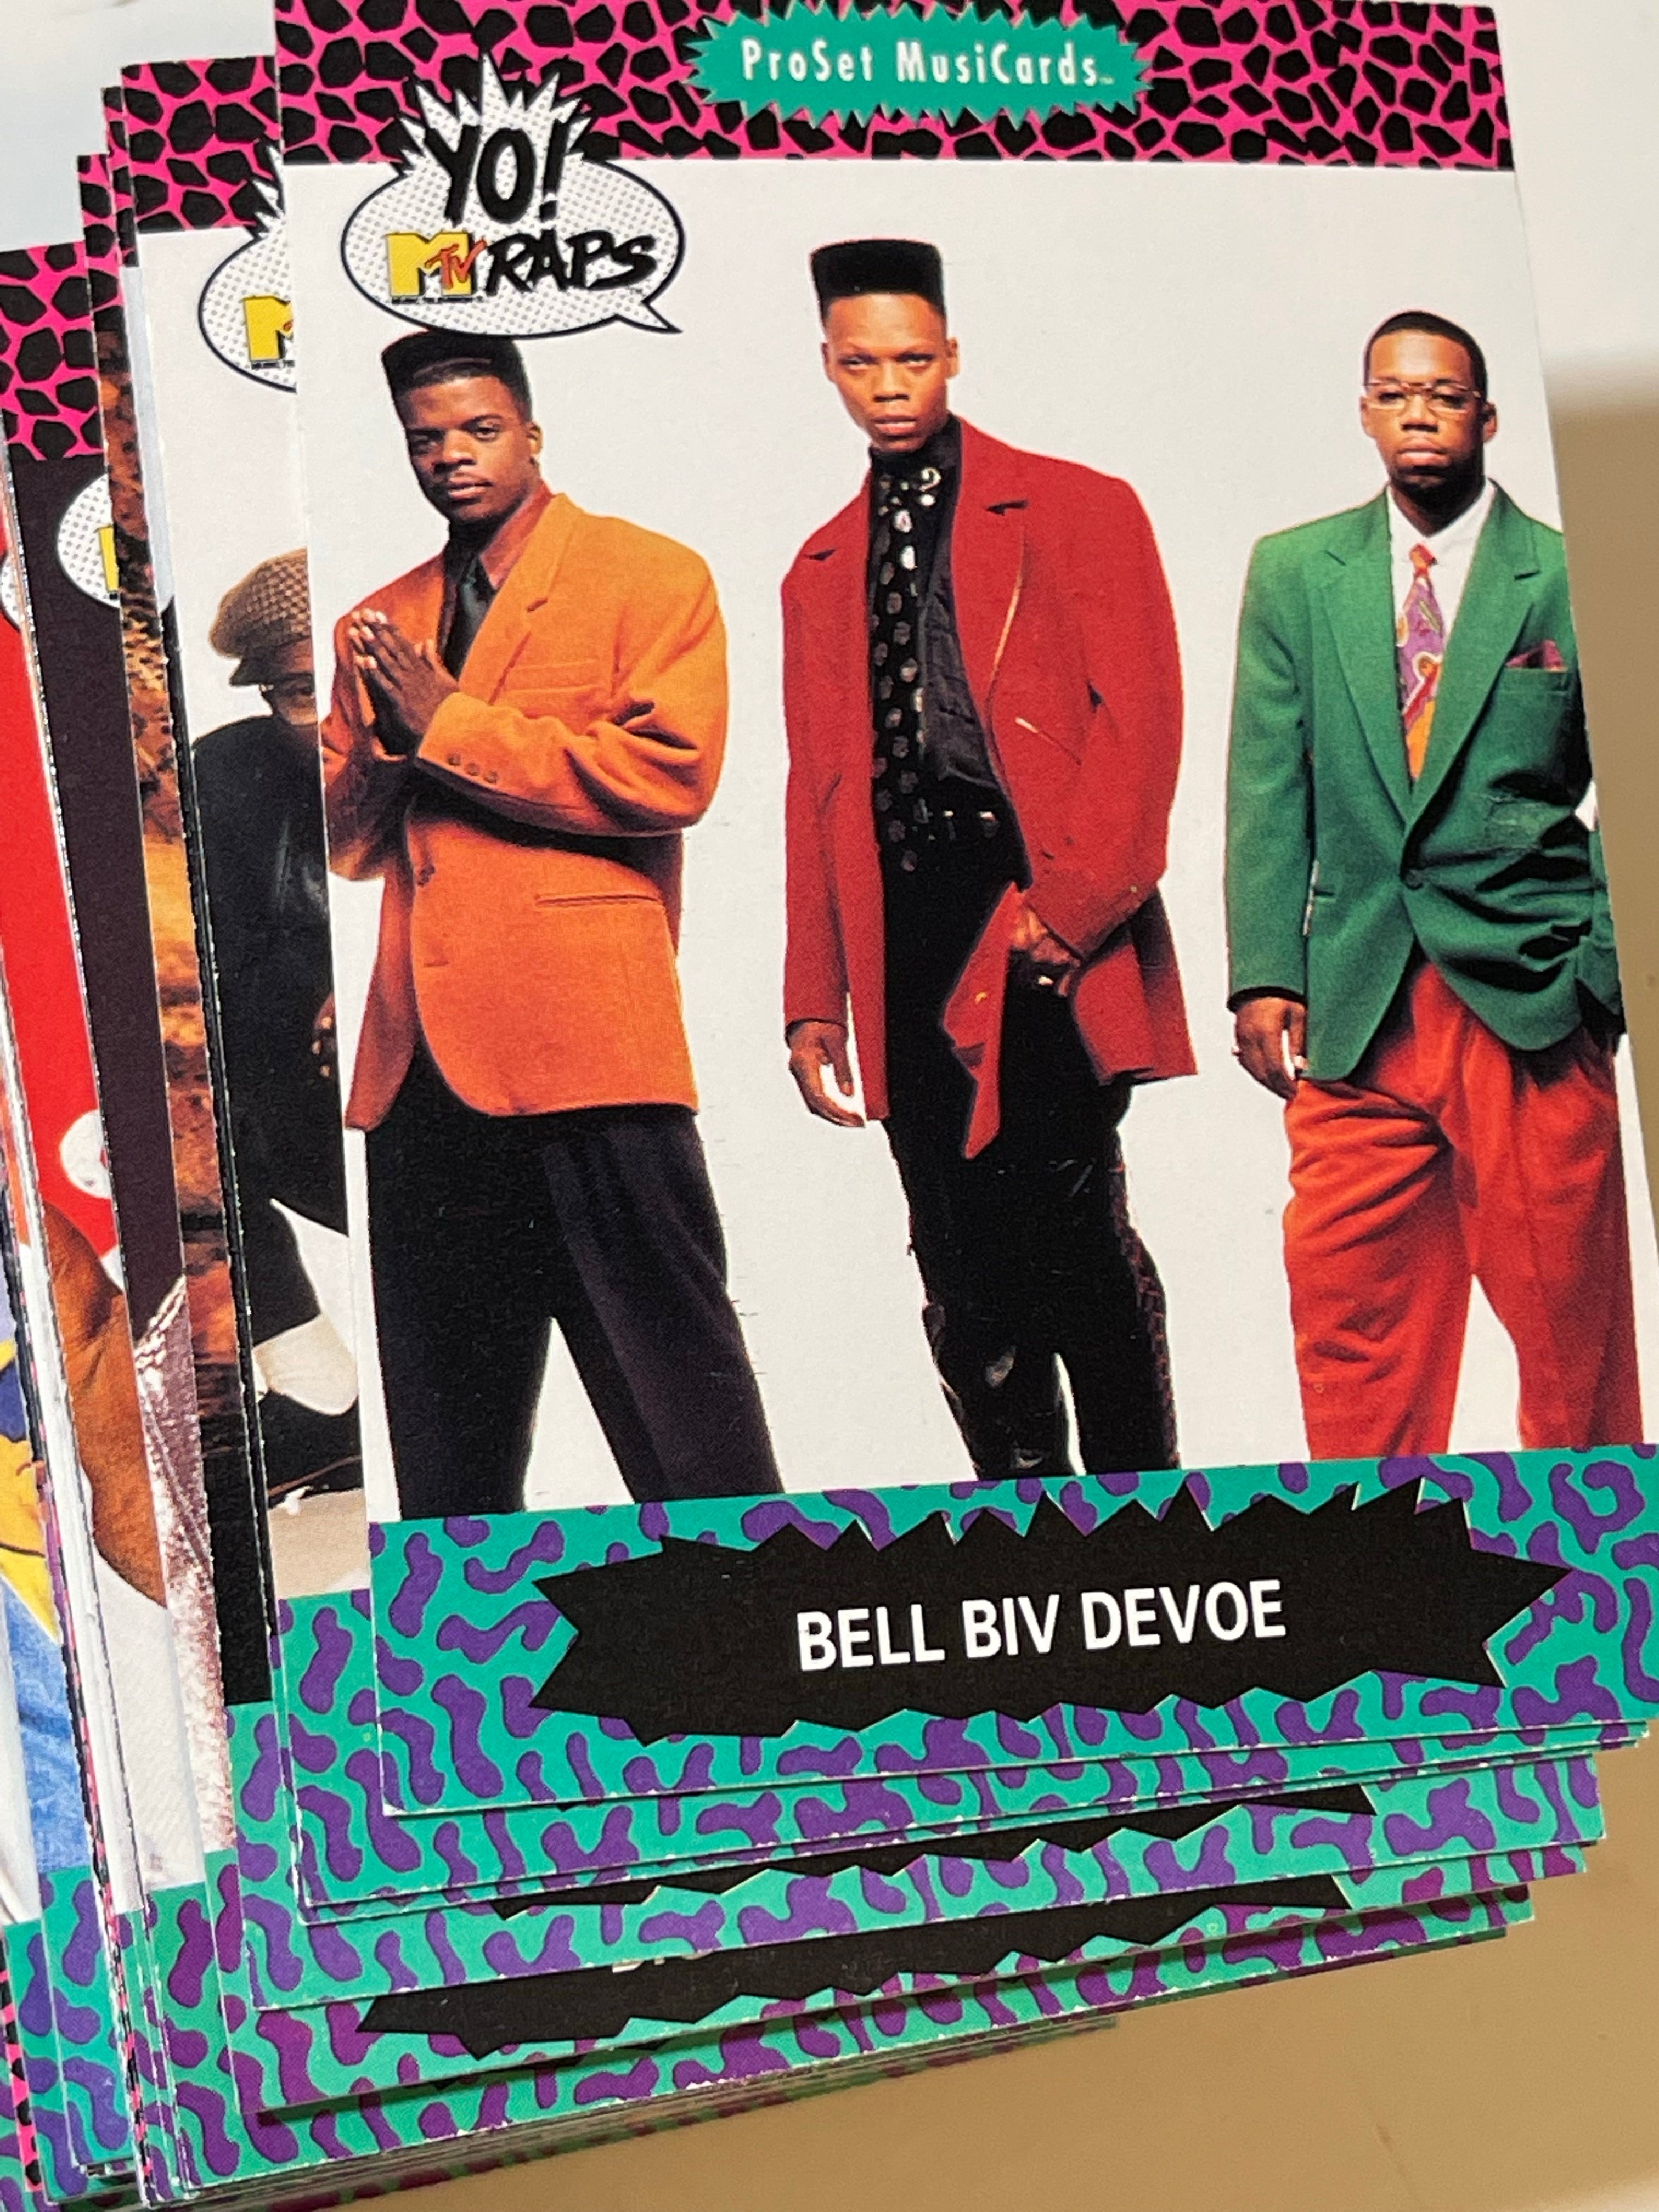 MTV Raps rare Rapper famous music rap stars cards set 1991